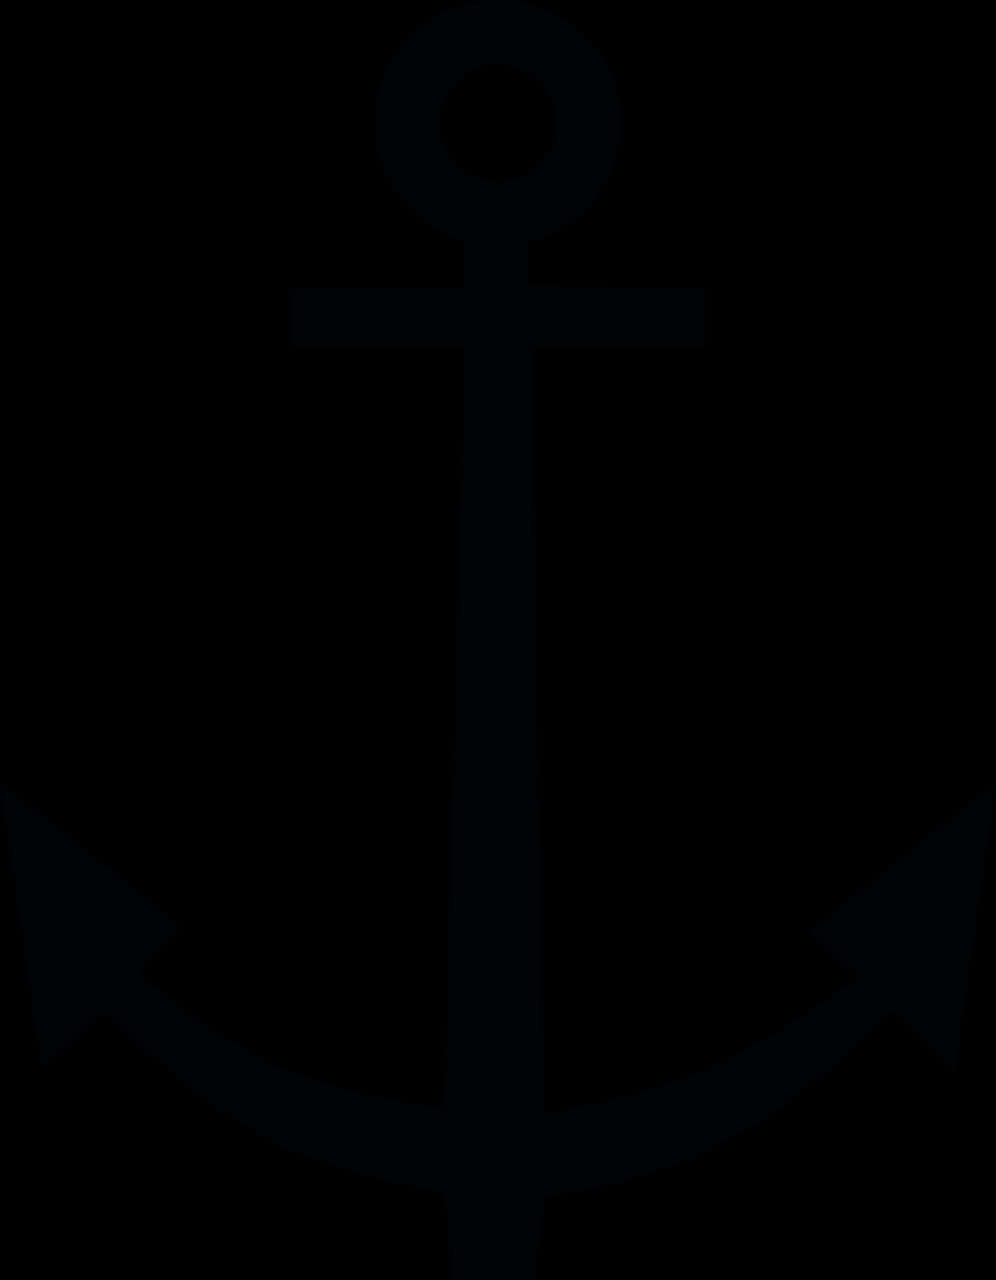 Nautical Anchor Silhouette